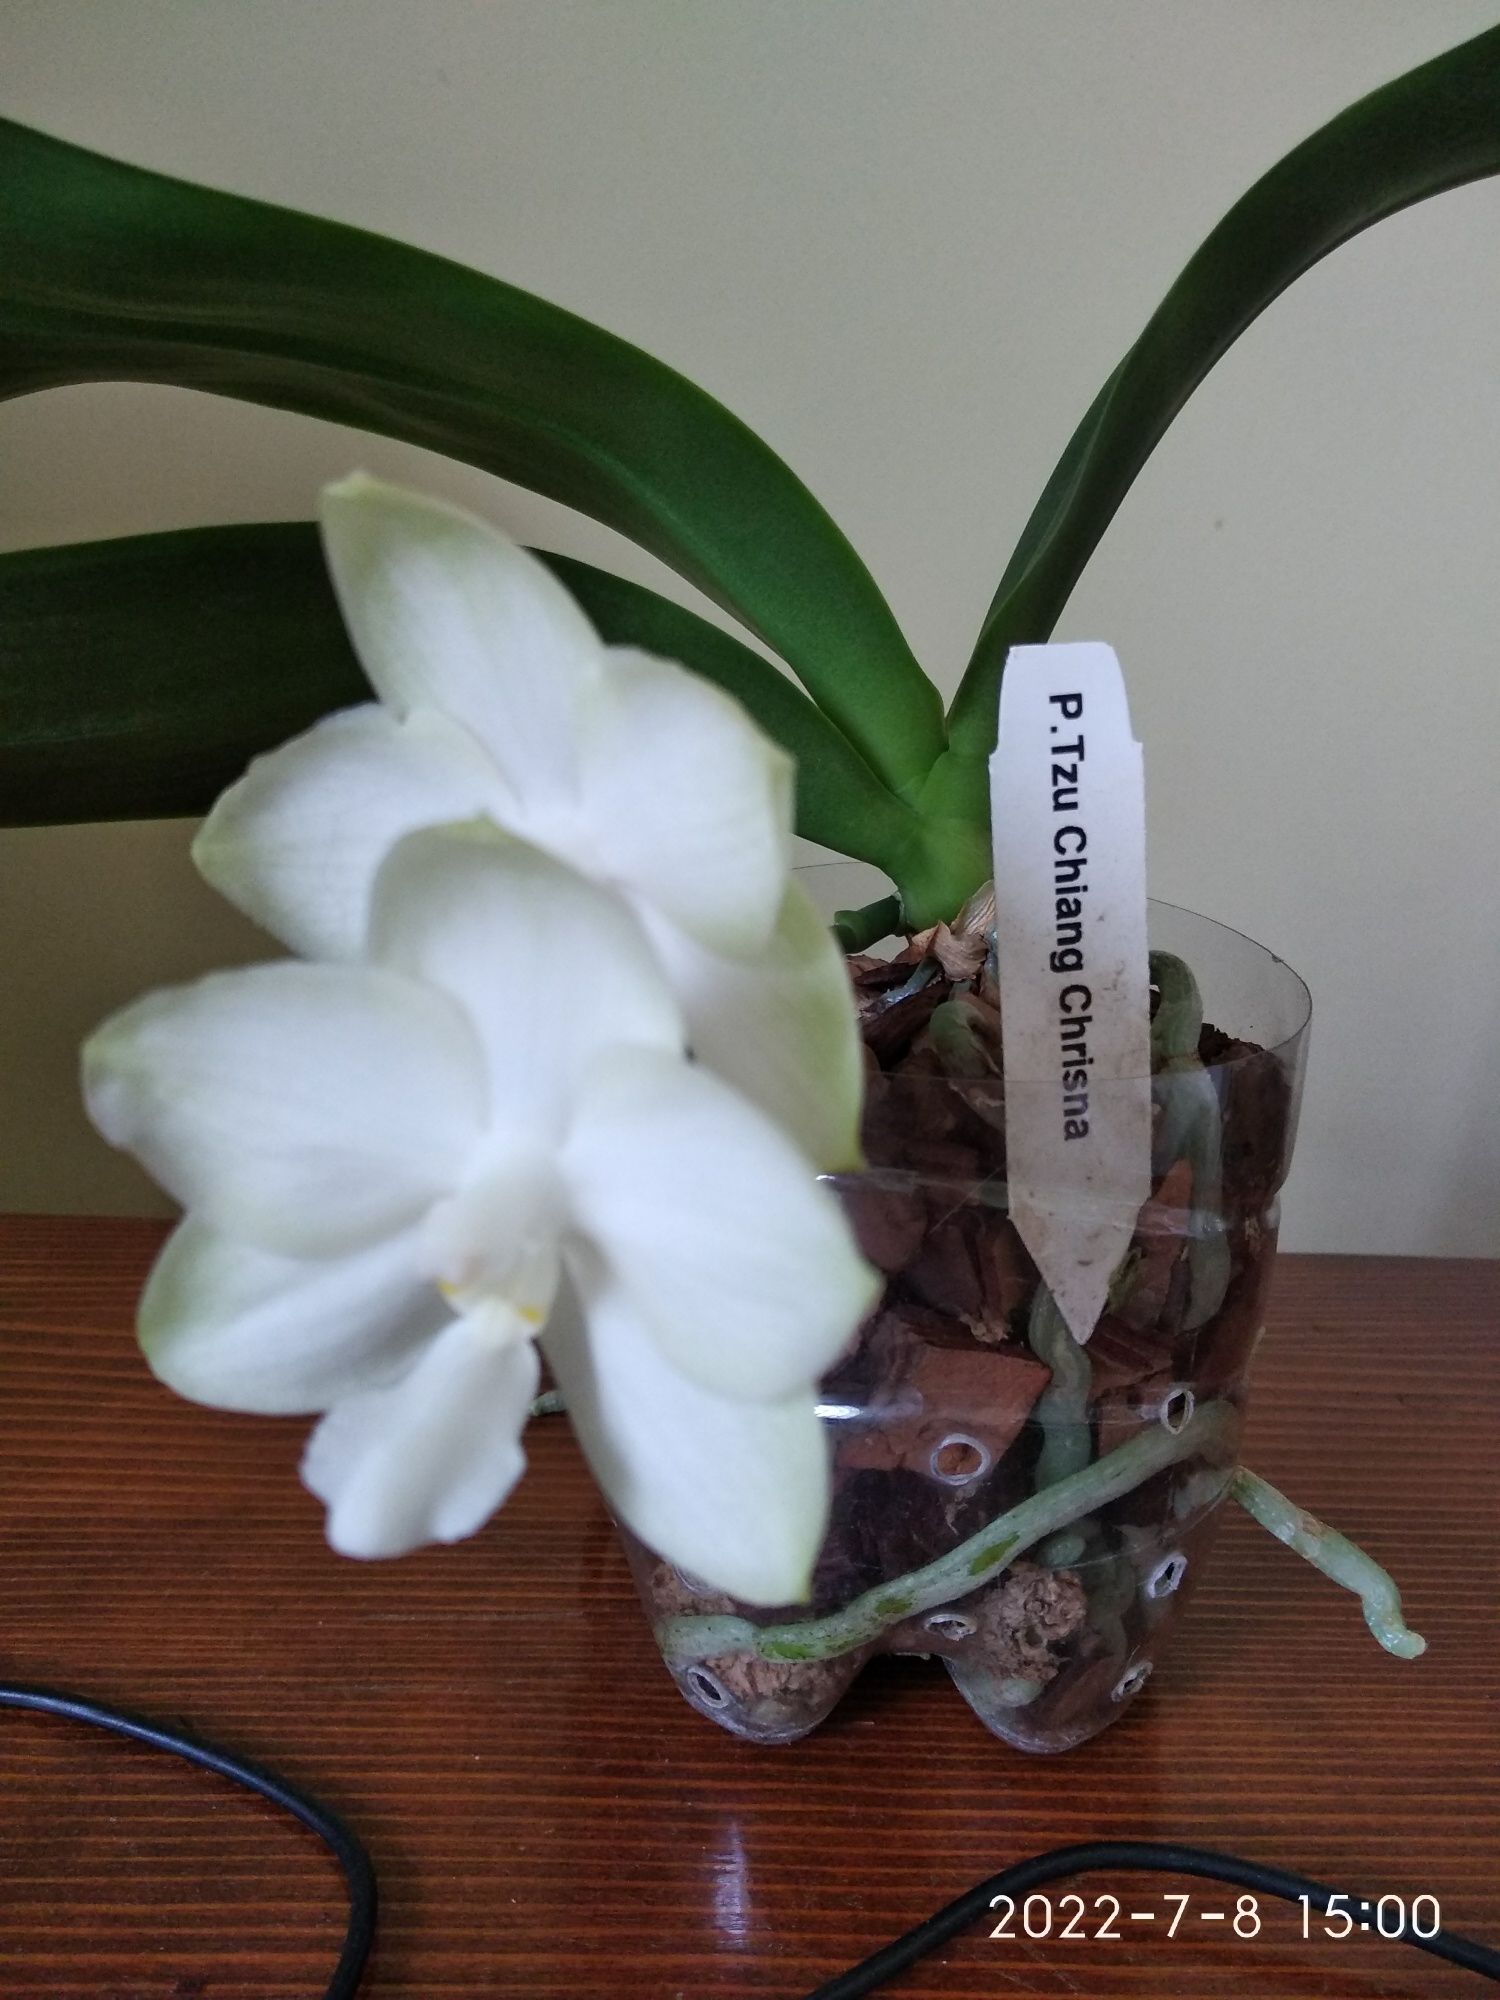 Фаленопсис орхідея